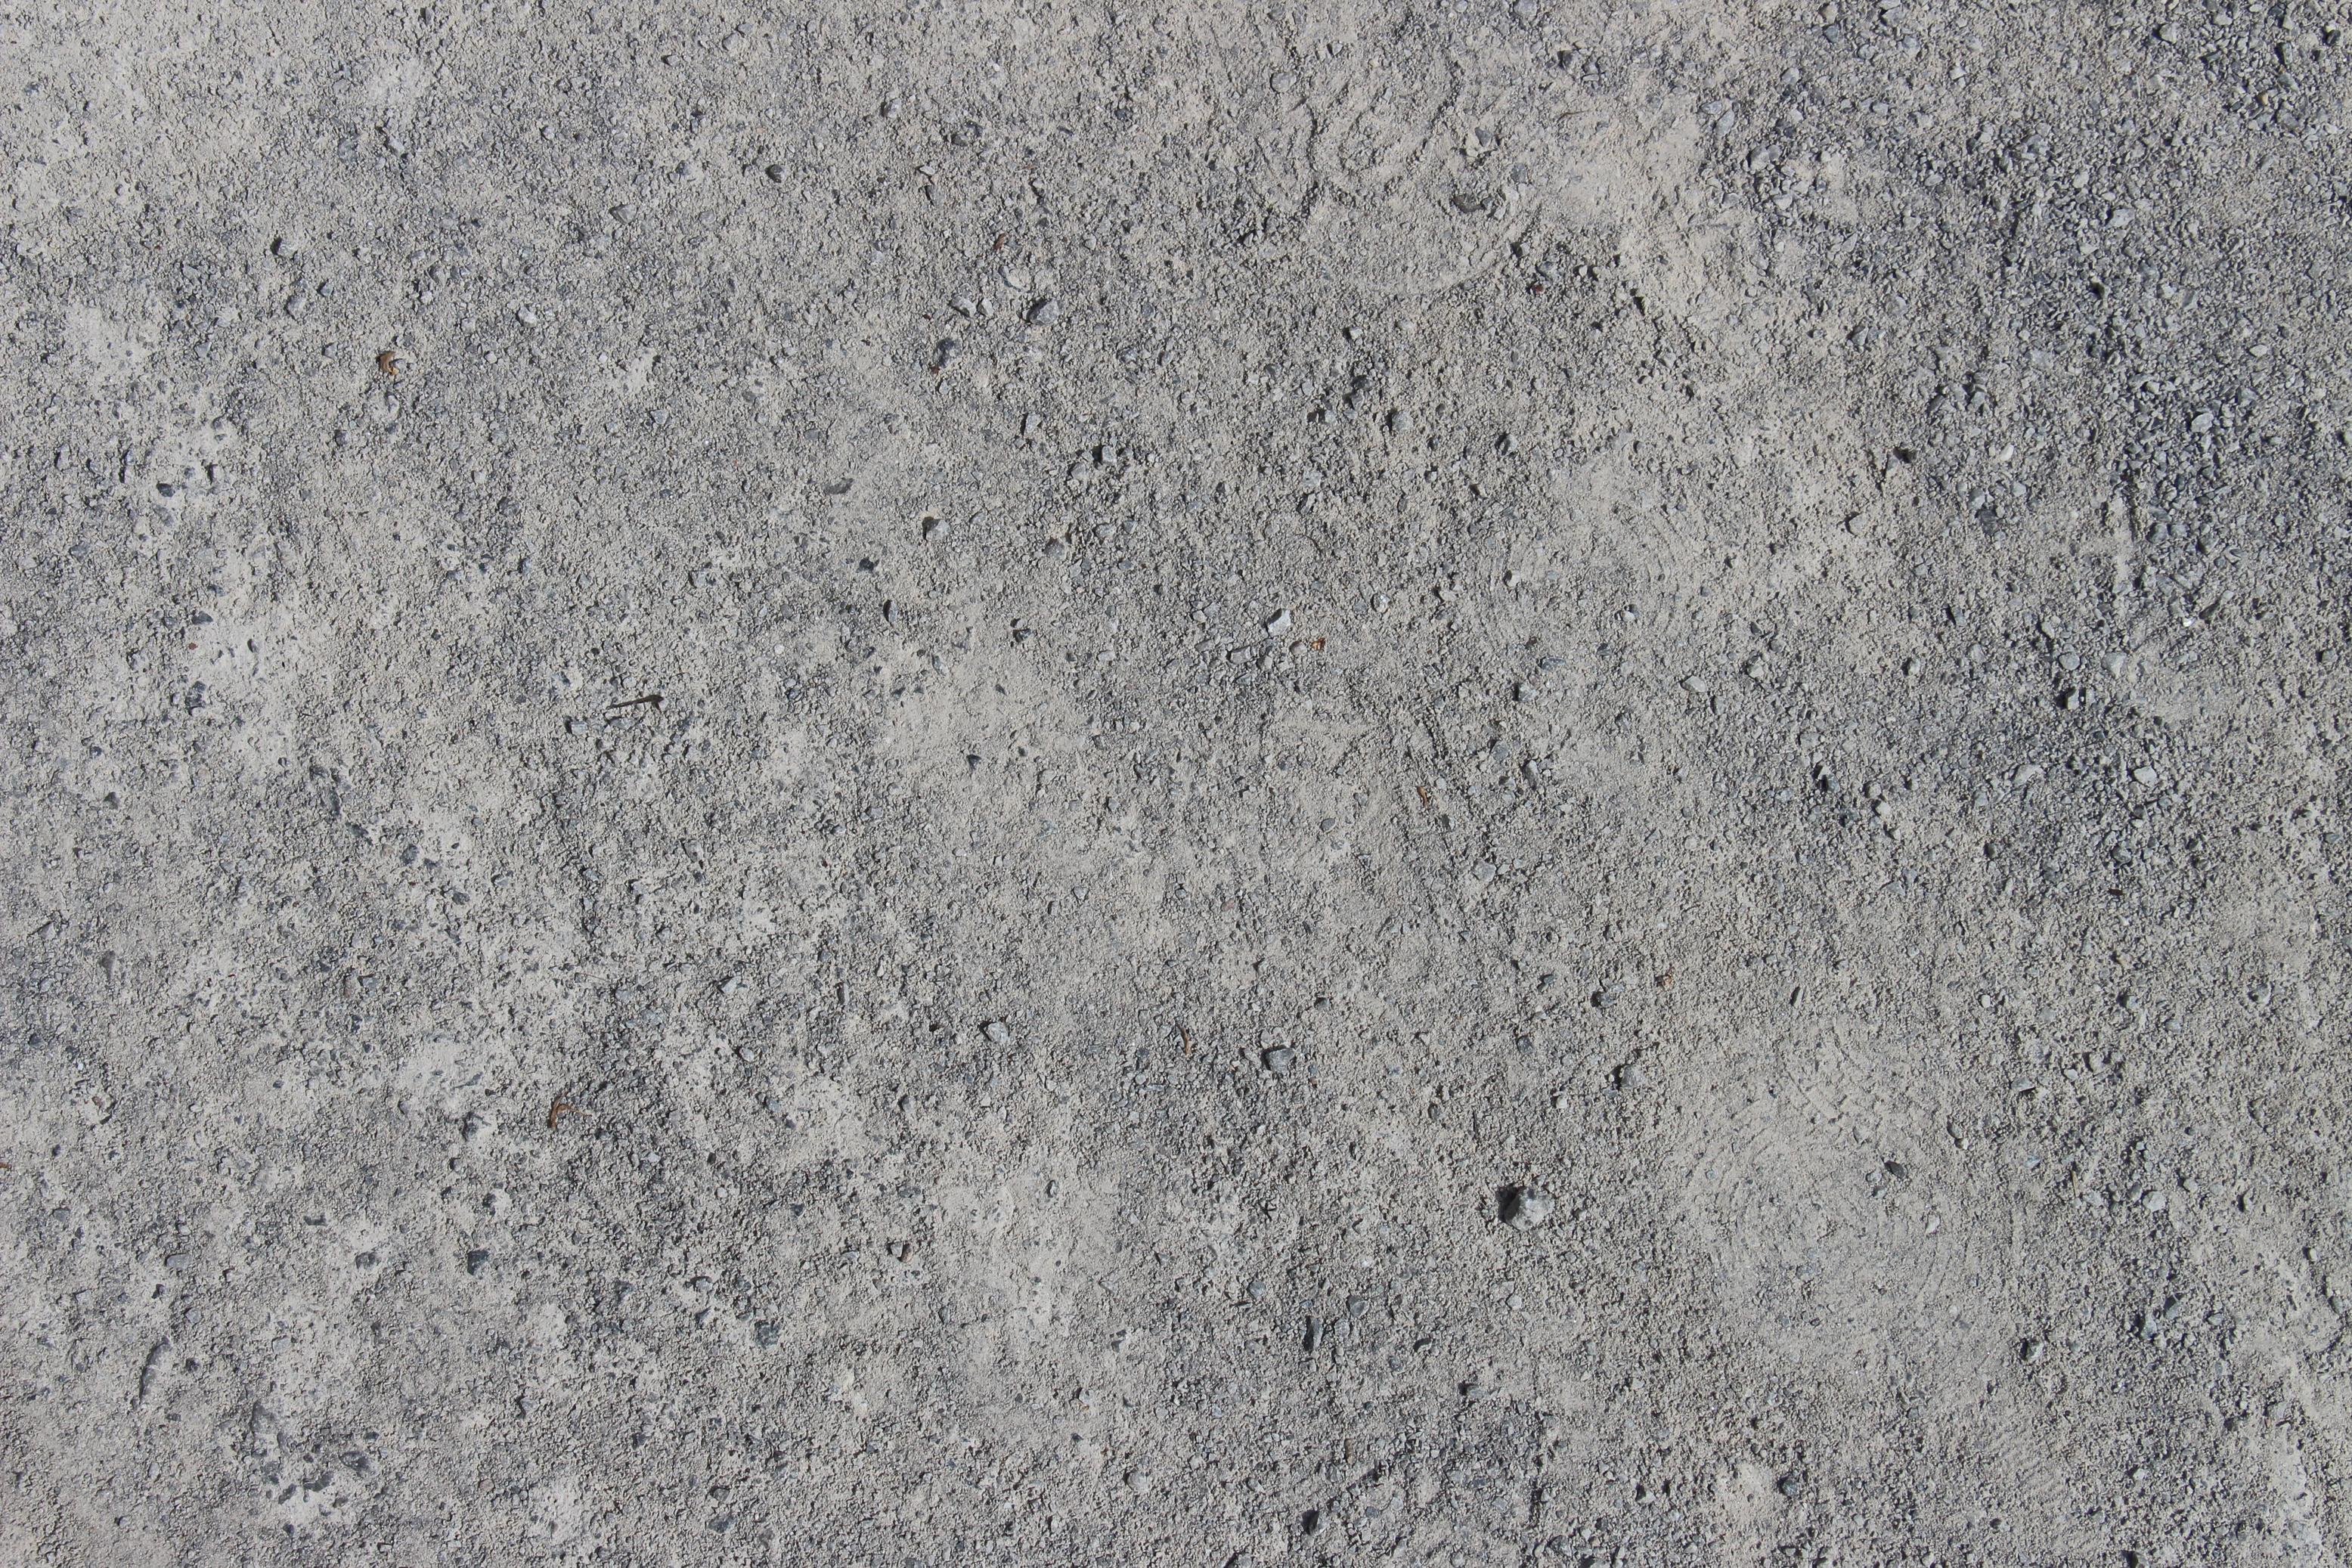 Concrete Surface Texture